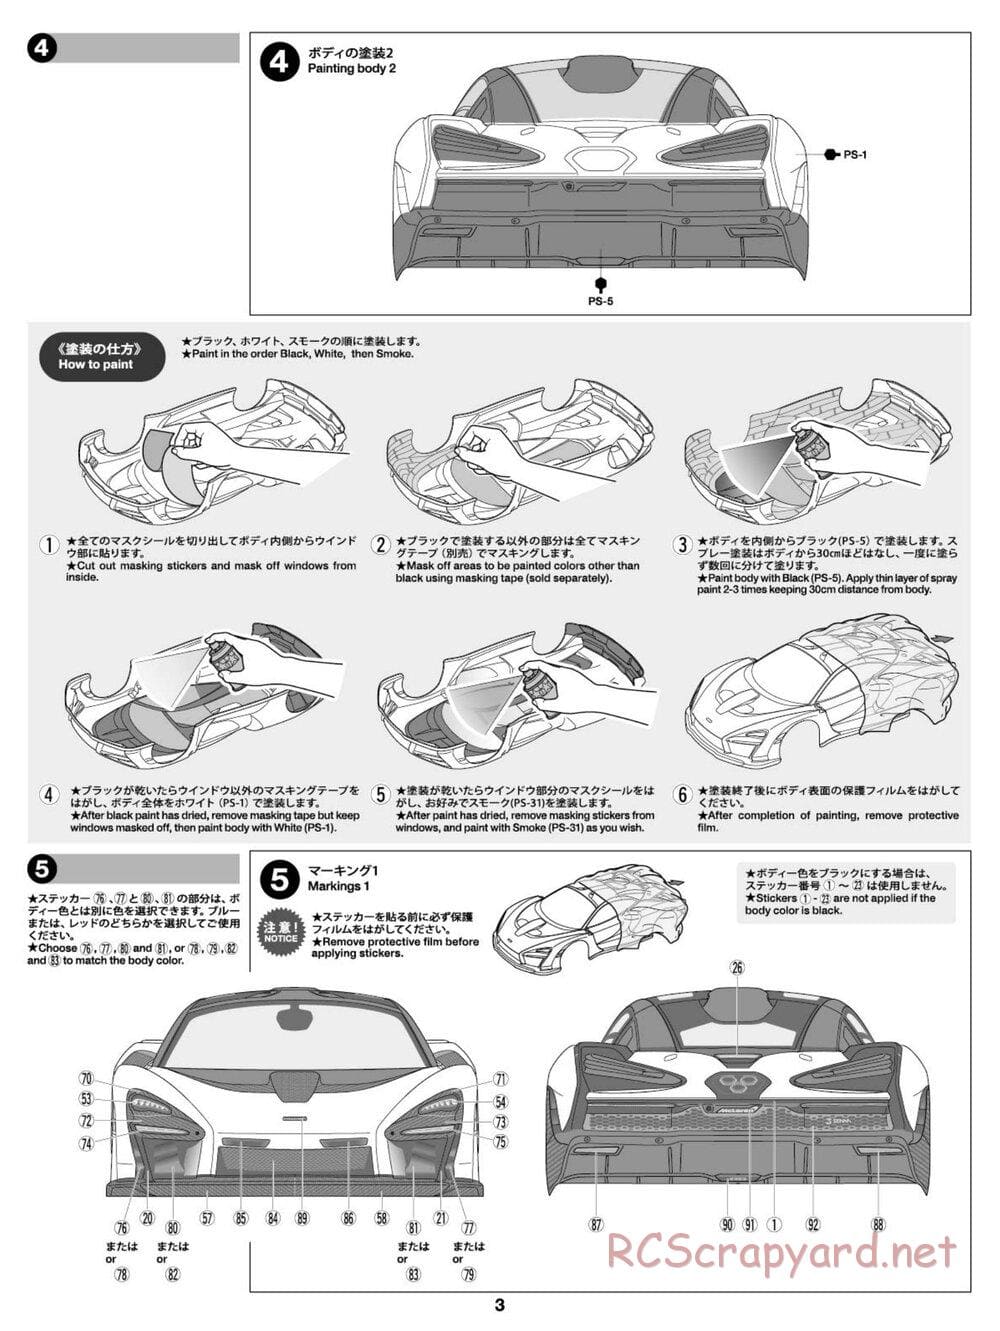 Tamiya - McLaren Senna - TT-02 Chassis - Body Manual - Page 3